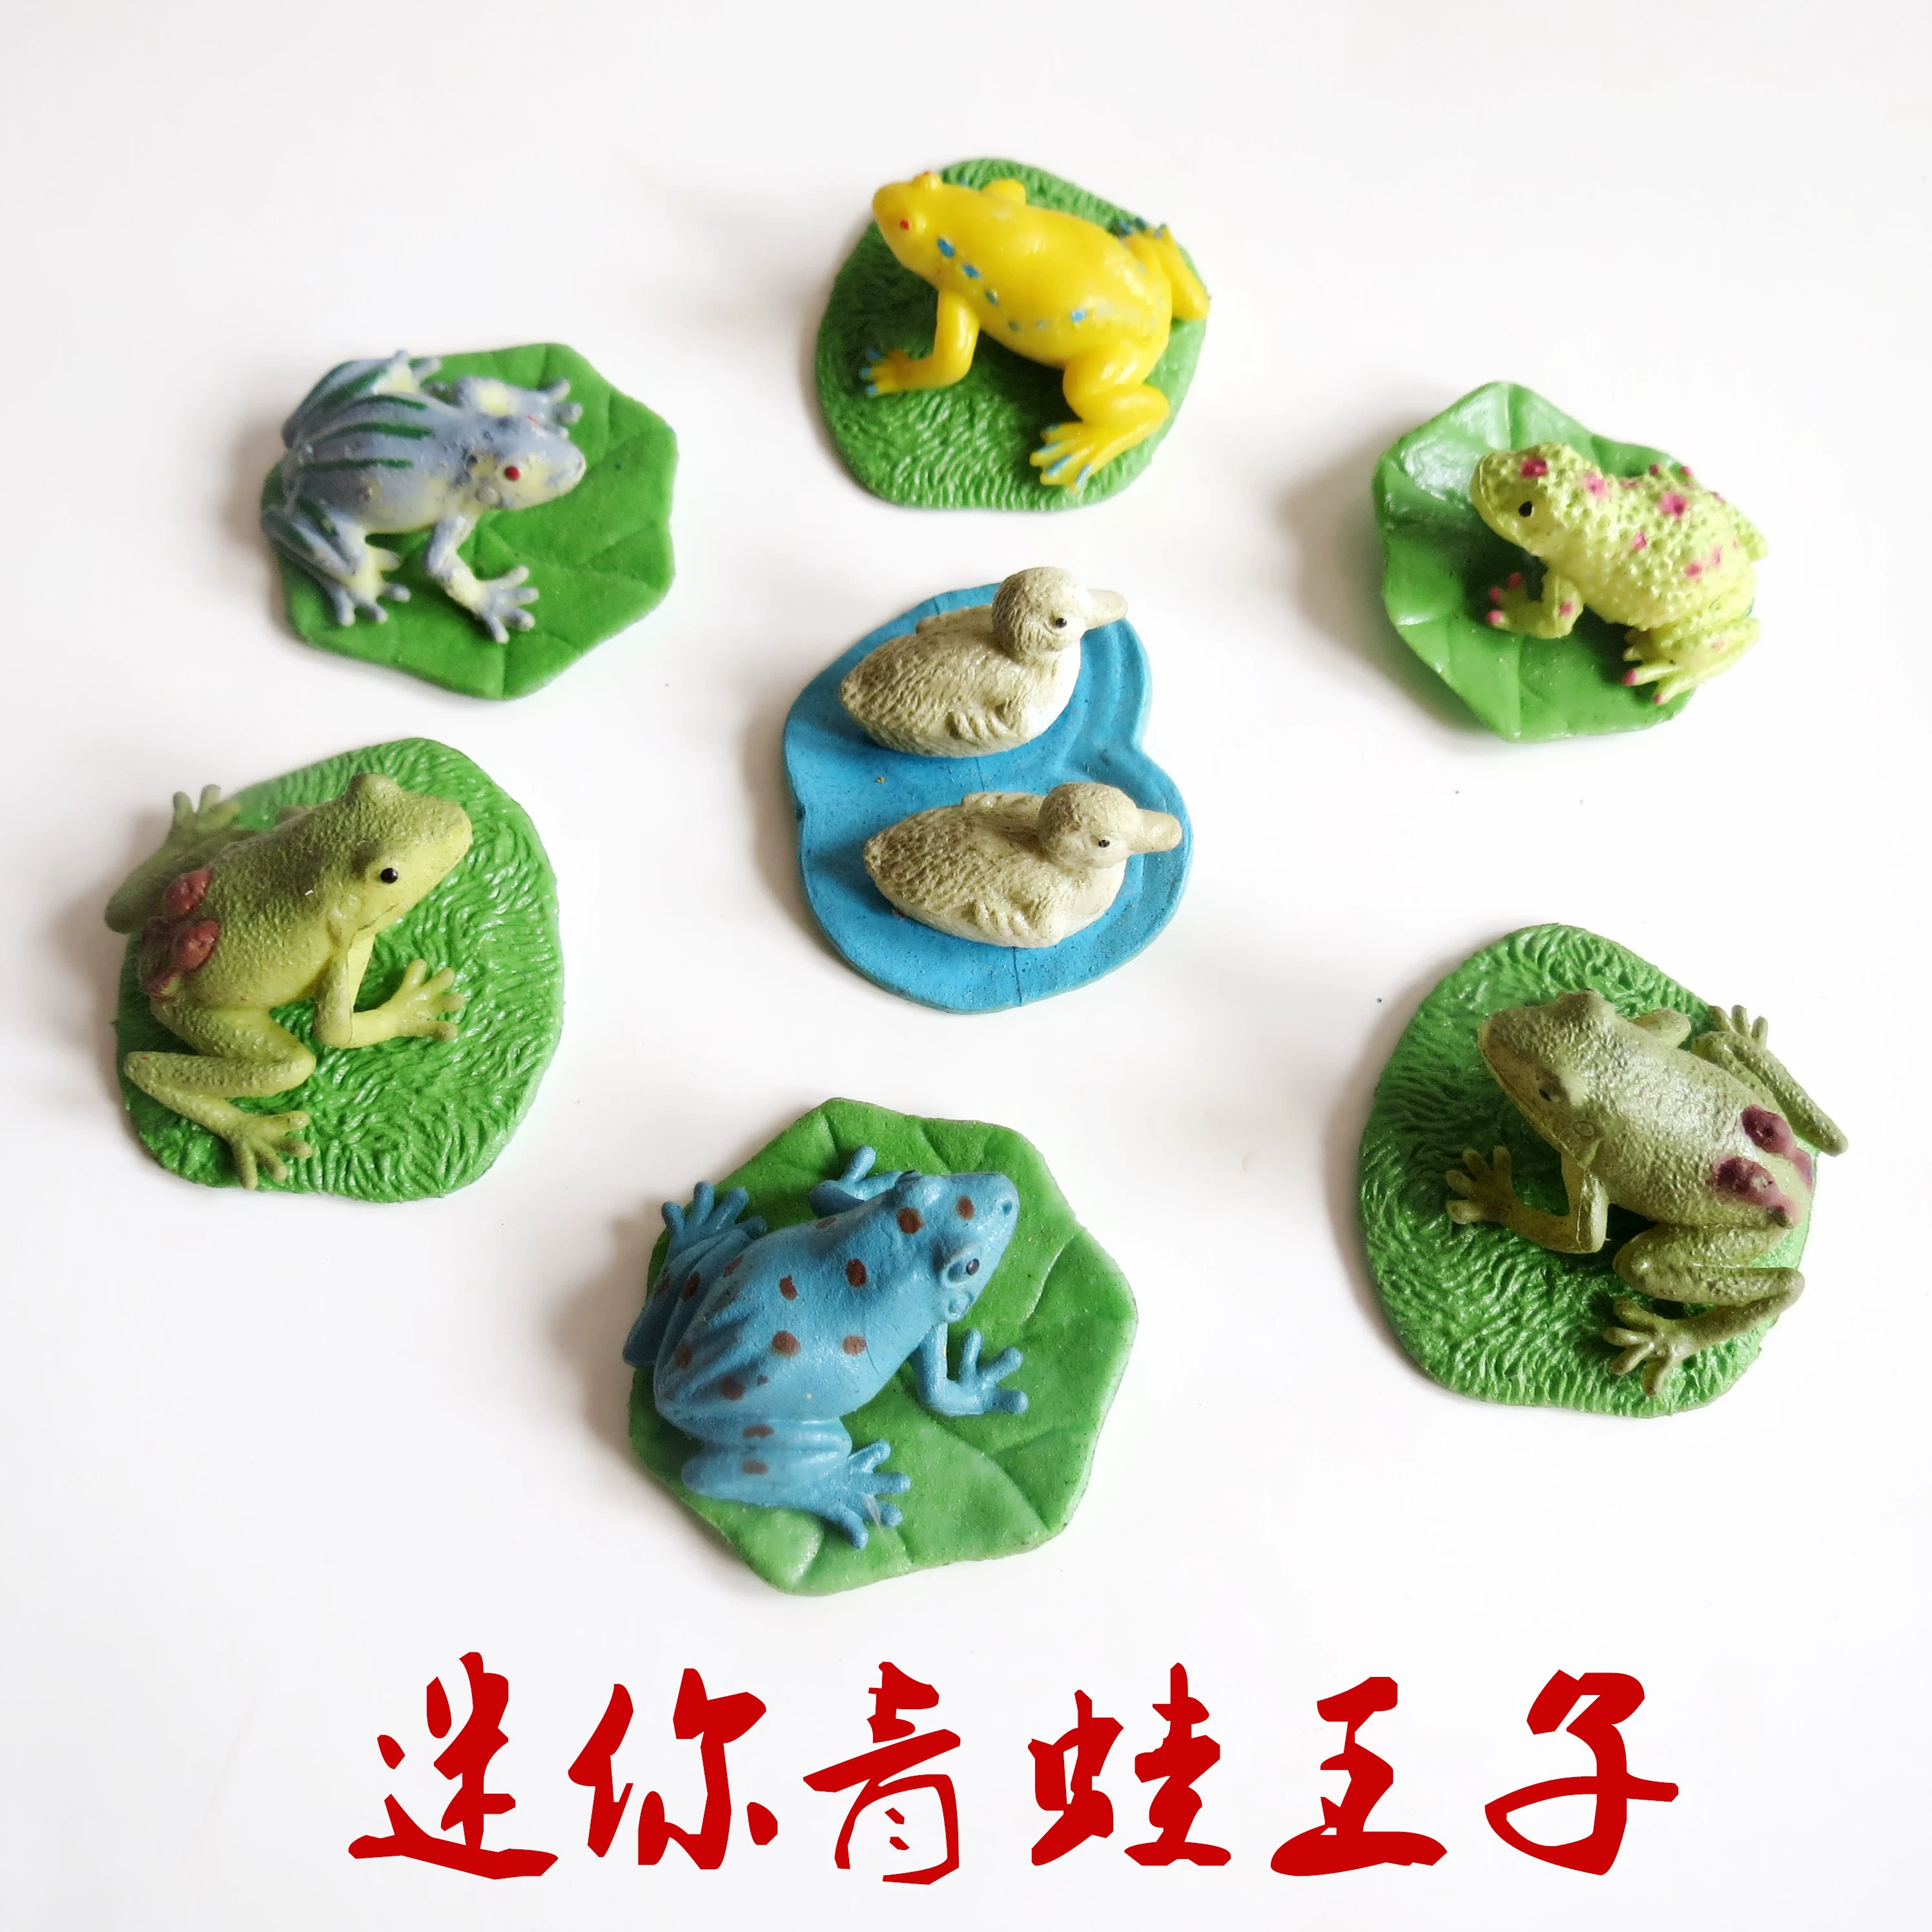 Mô phỏng mô hình động vật dành cho trẻ em vườn thú mini đồ chơi trang trại chăn nuôi bò thằn lằn ếch con khủng long nhỏ - Đồ chơi gia đình